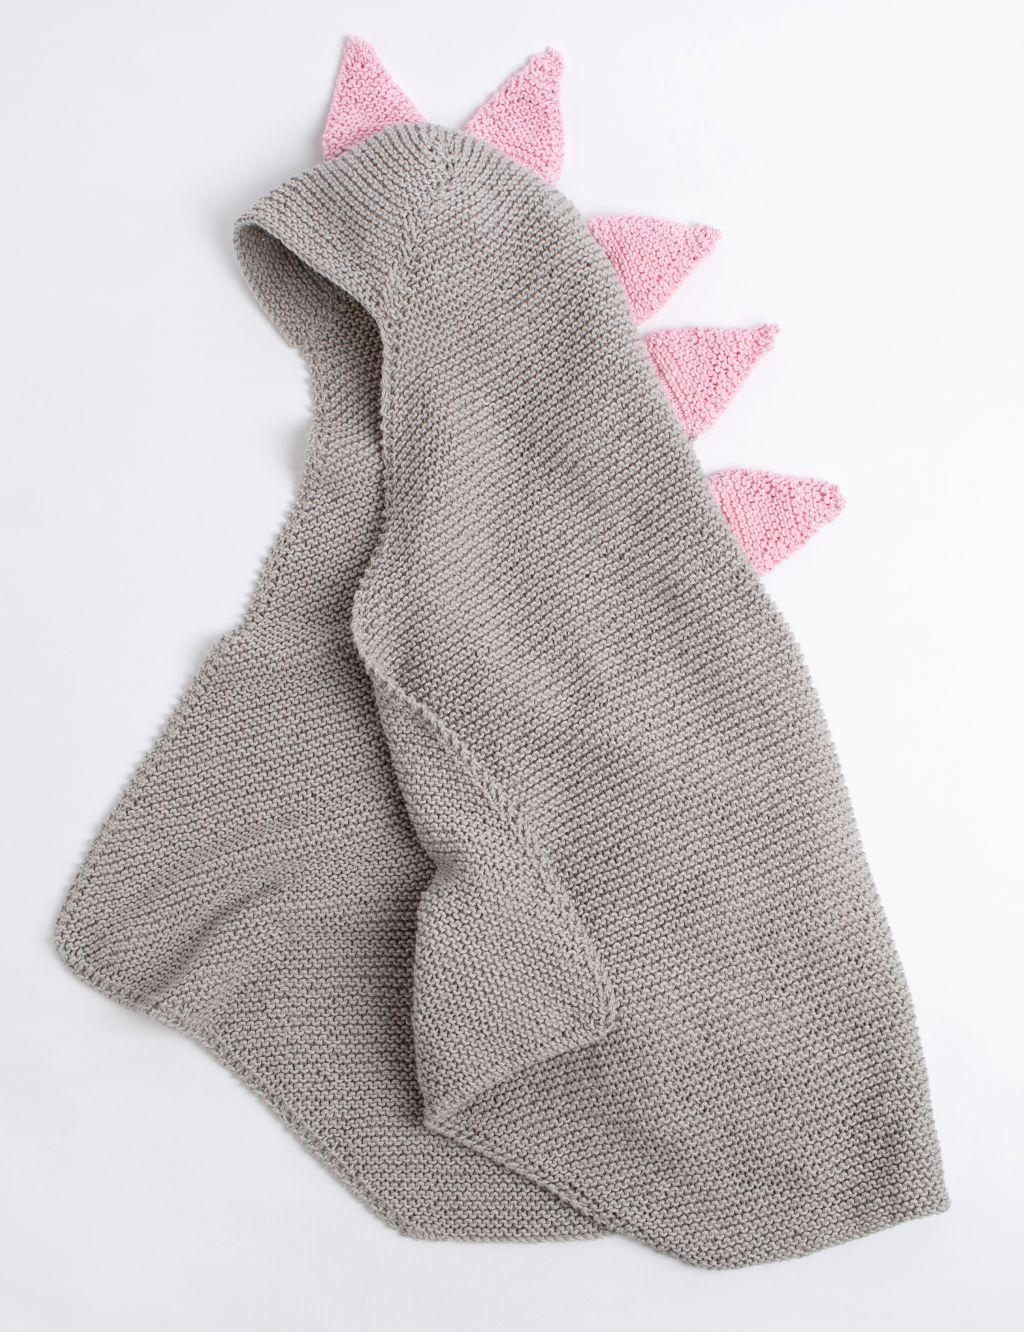 Dinosaur Hooded Blanket Knitting Kit 1 of 3